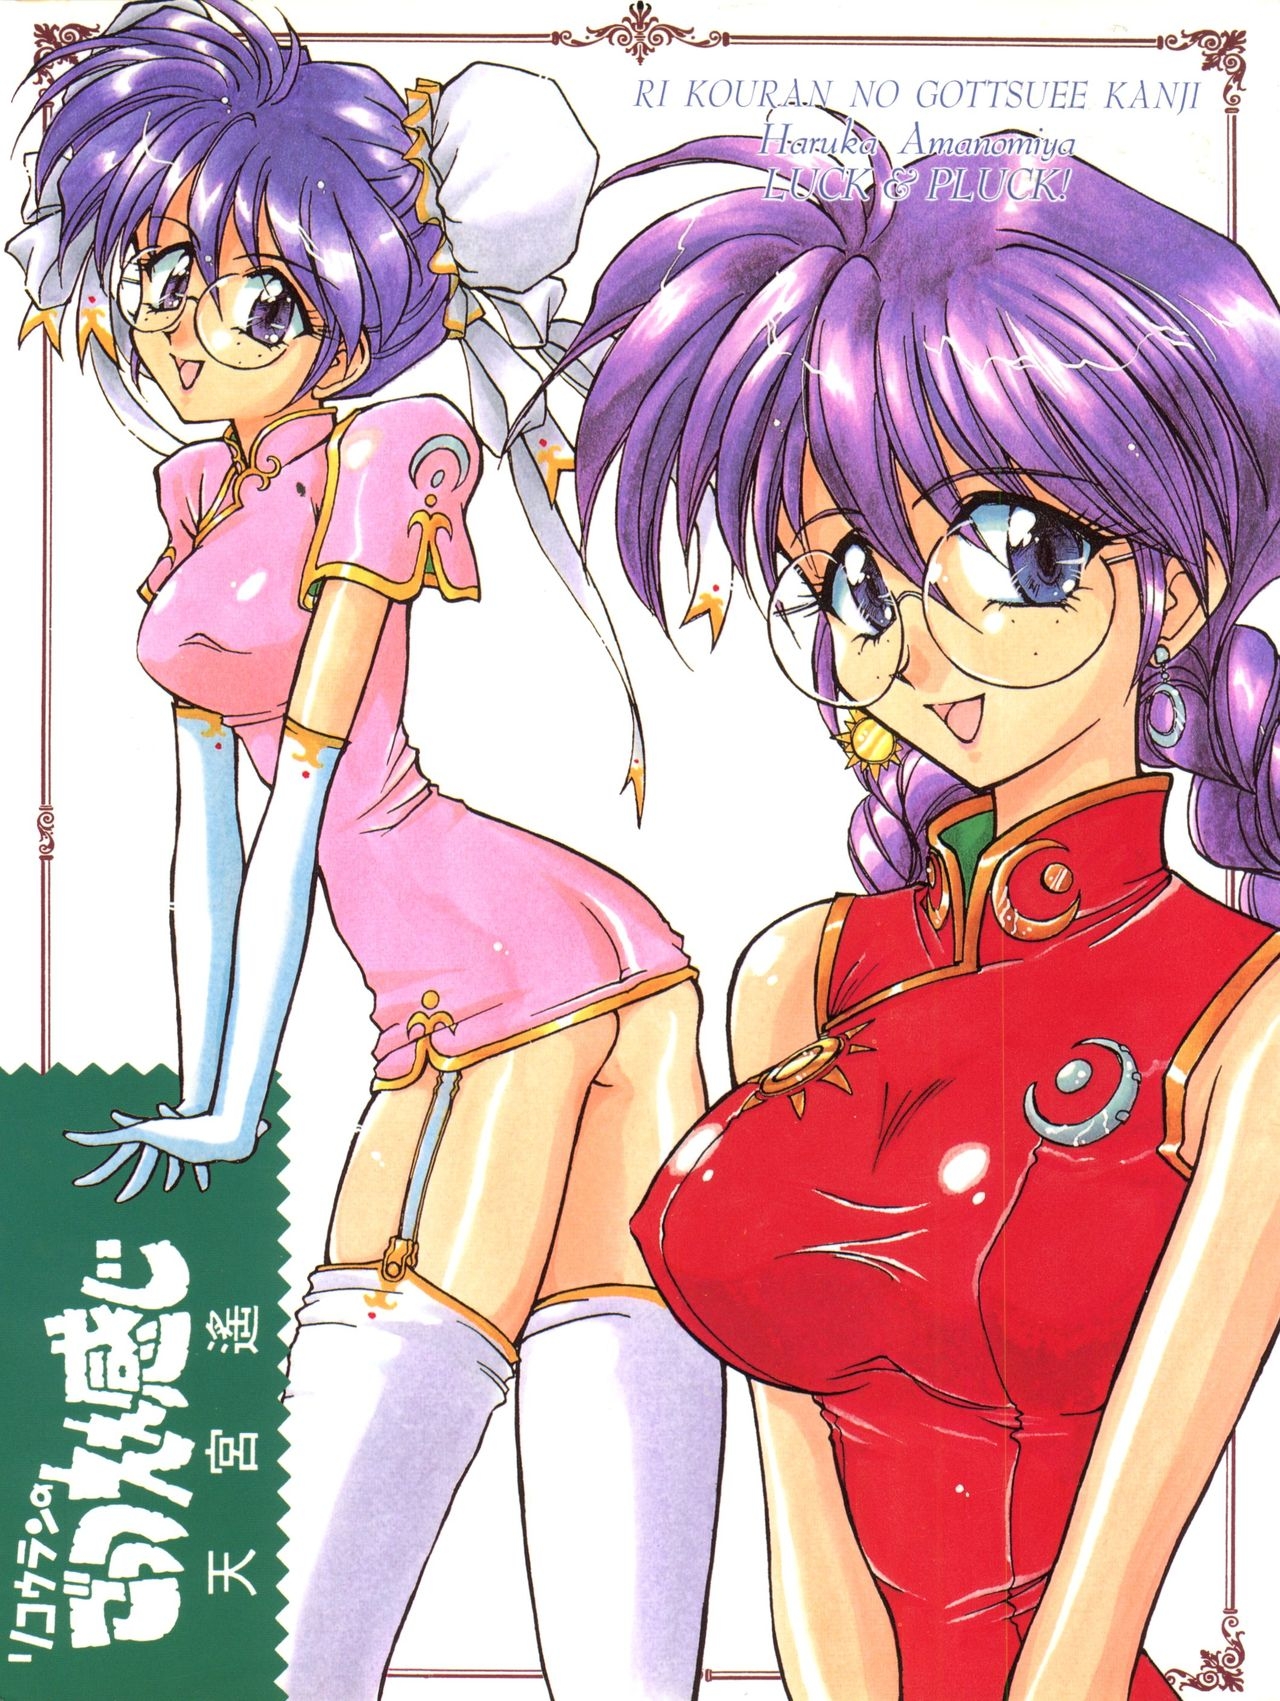 [LUCK&PLUCK!Co. (Amanomiya Haruka)] Li Kohran no Gottsuee Kanji (Sakura Wars) [1997-05-25] 1